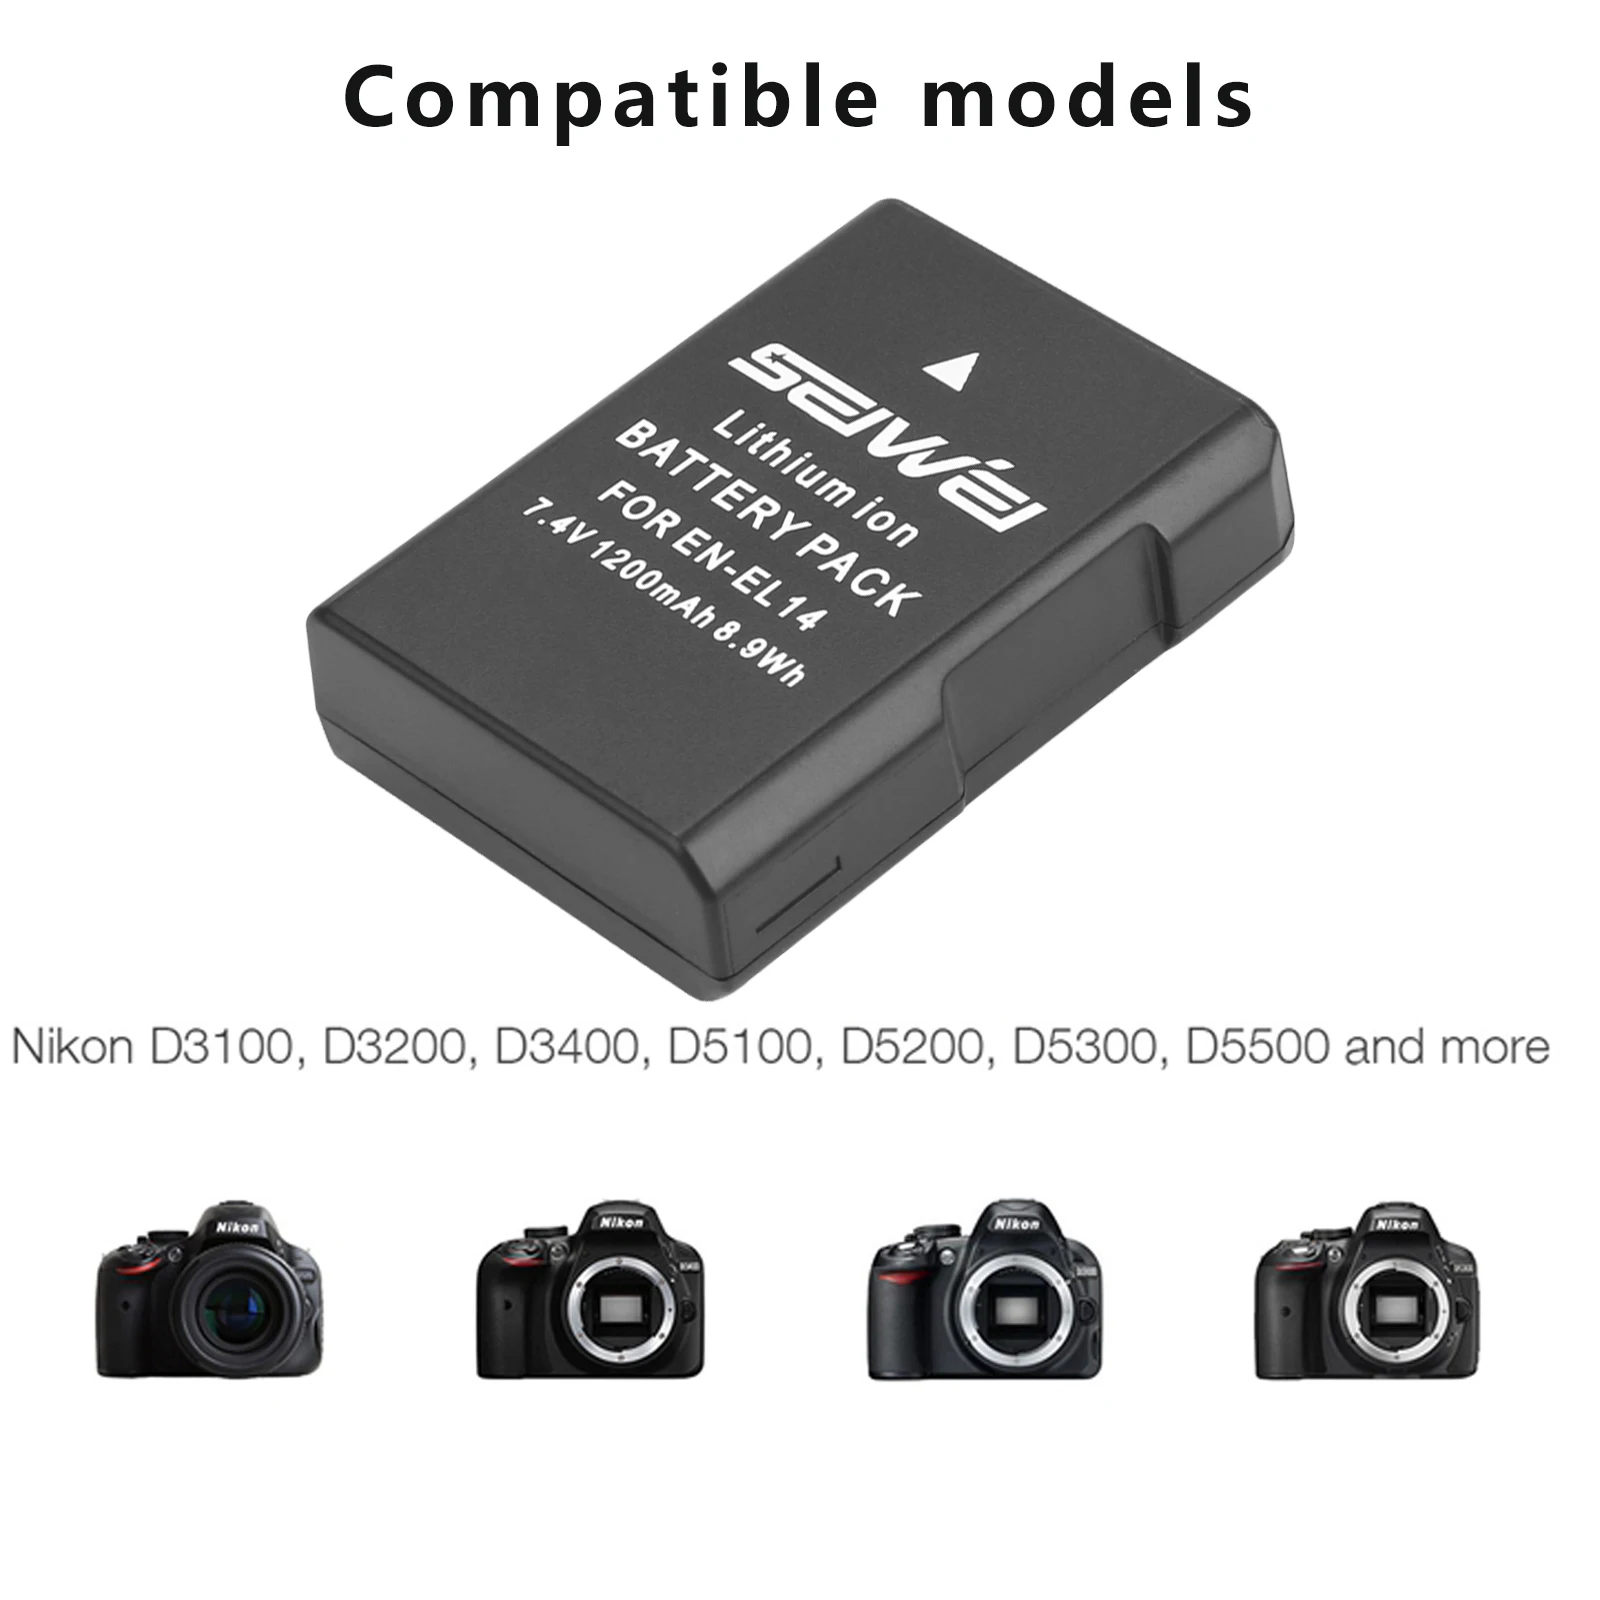 7.4V 1200mAh EN-EL14 EN-EL14a ENEL14 EN EL14 EL14a Battery  for Nikon D3100 D3200 D3300 D5100 D5200 D5300 P7000 images - 6